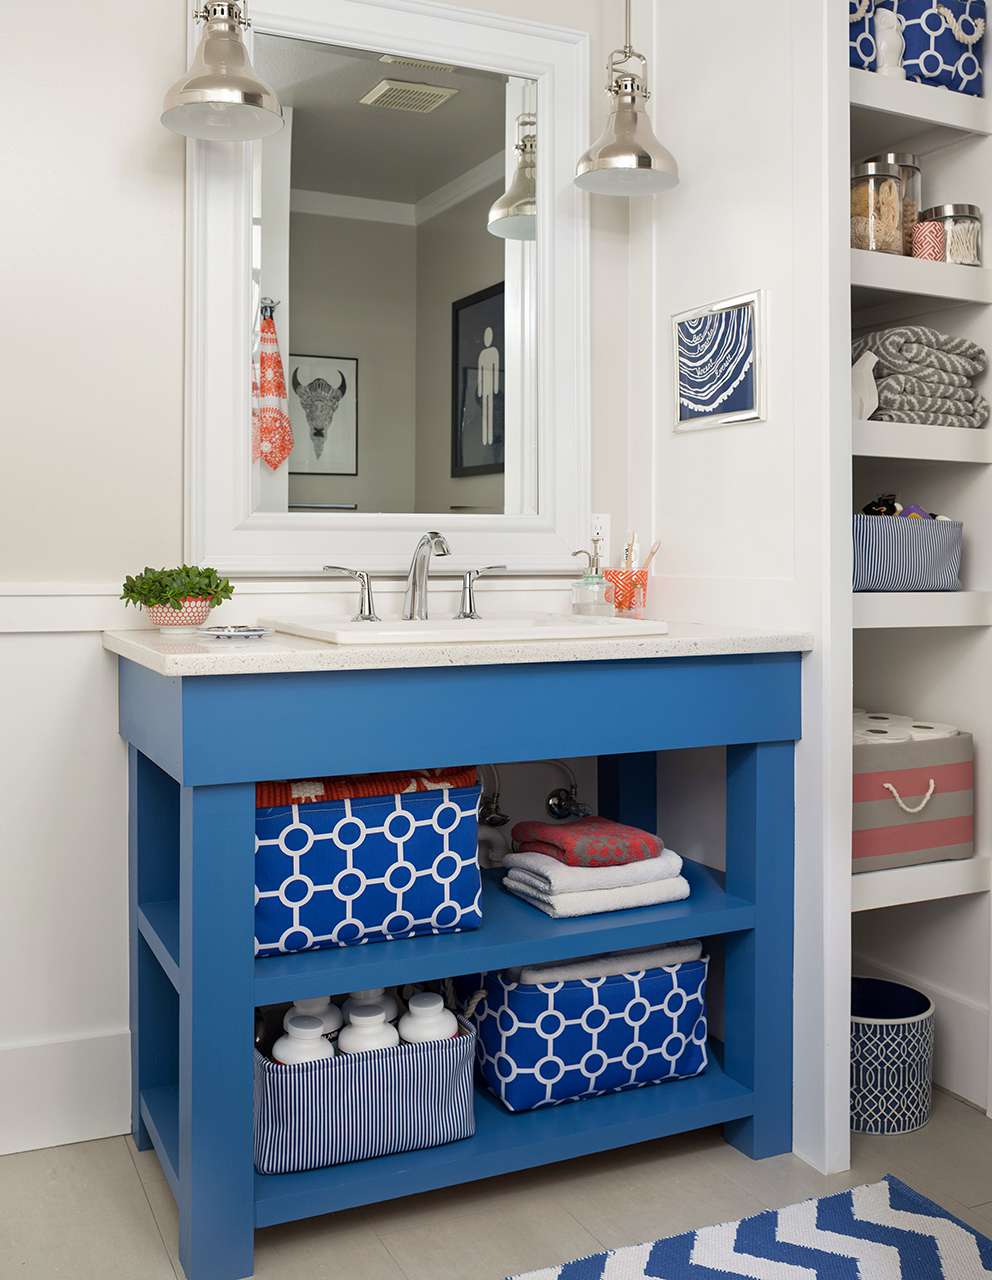 18 Diy Bathroom Vanity Ideas For Custom, Compact Bathroom Vanity Plans